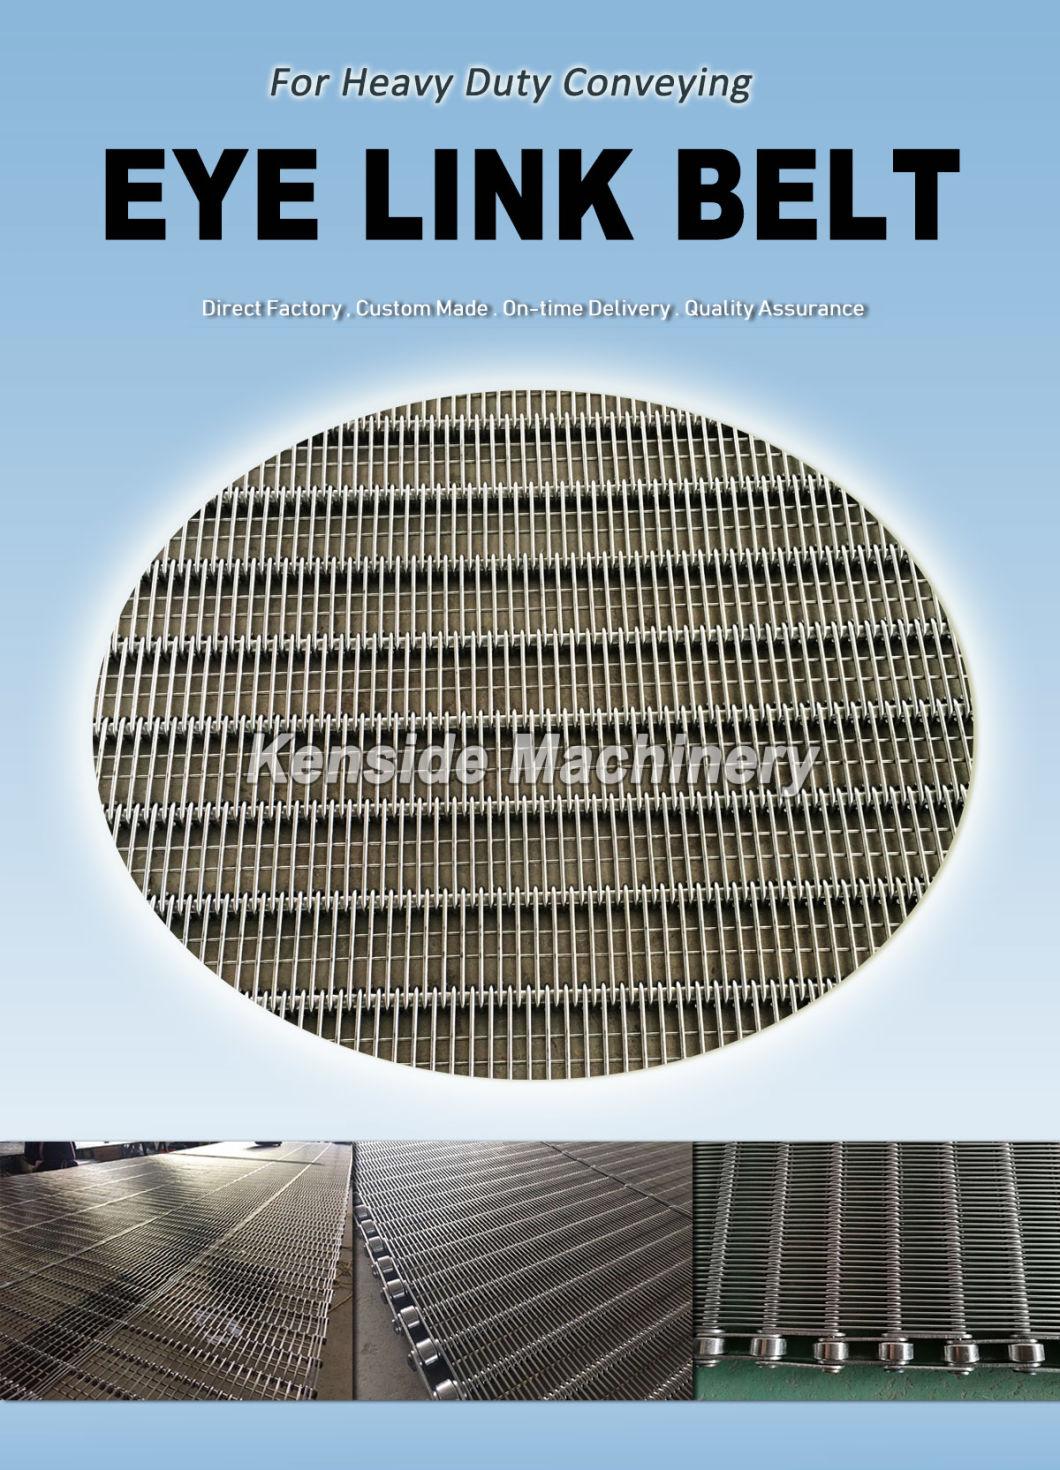 Eyelink Conveyor Belts